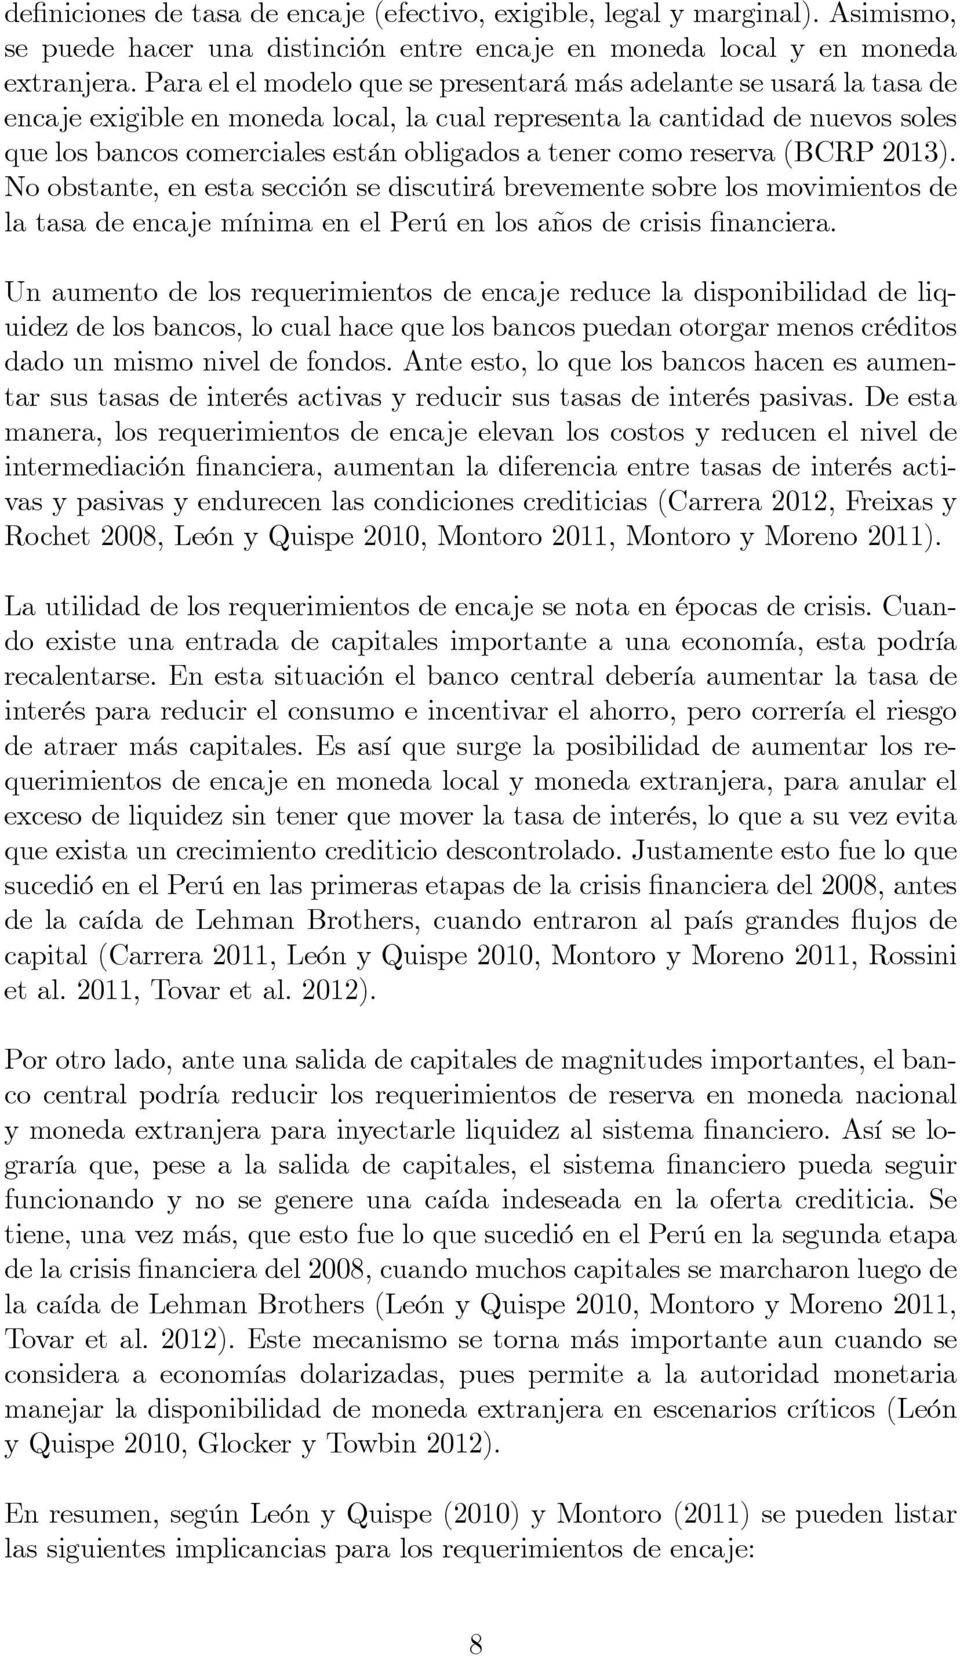 como reserva (BCRP 2013). No obstante, en esta sección se discutirá brevemente sobre los movimientos de la tasa de encaje mínima en el Perú en los años de crisis financiera.